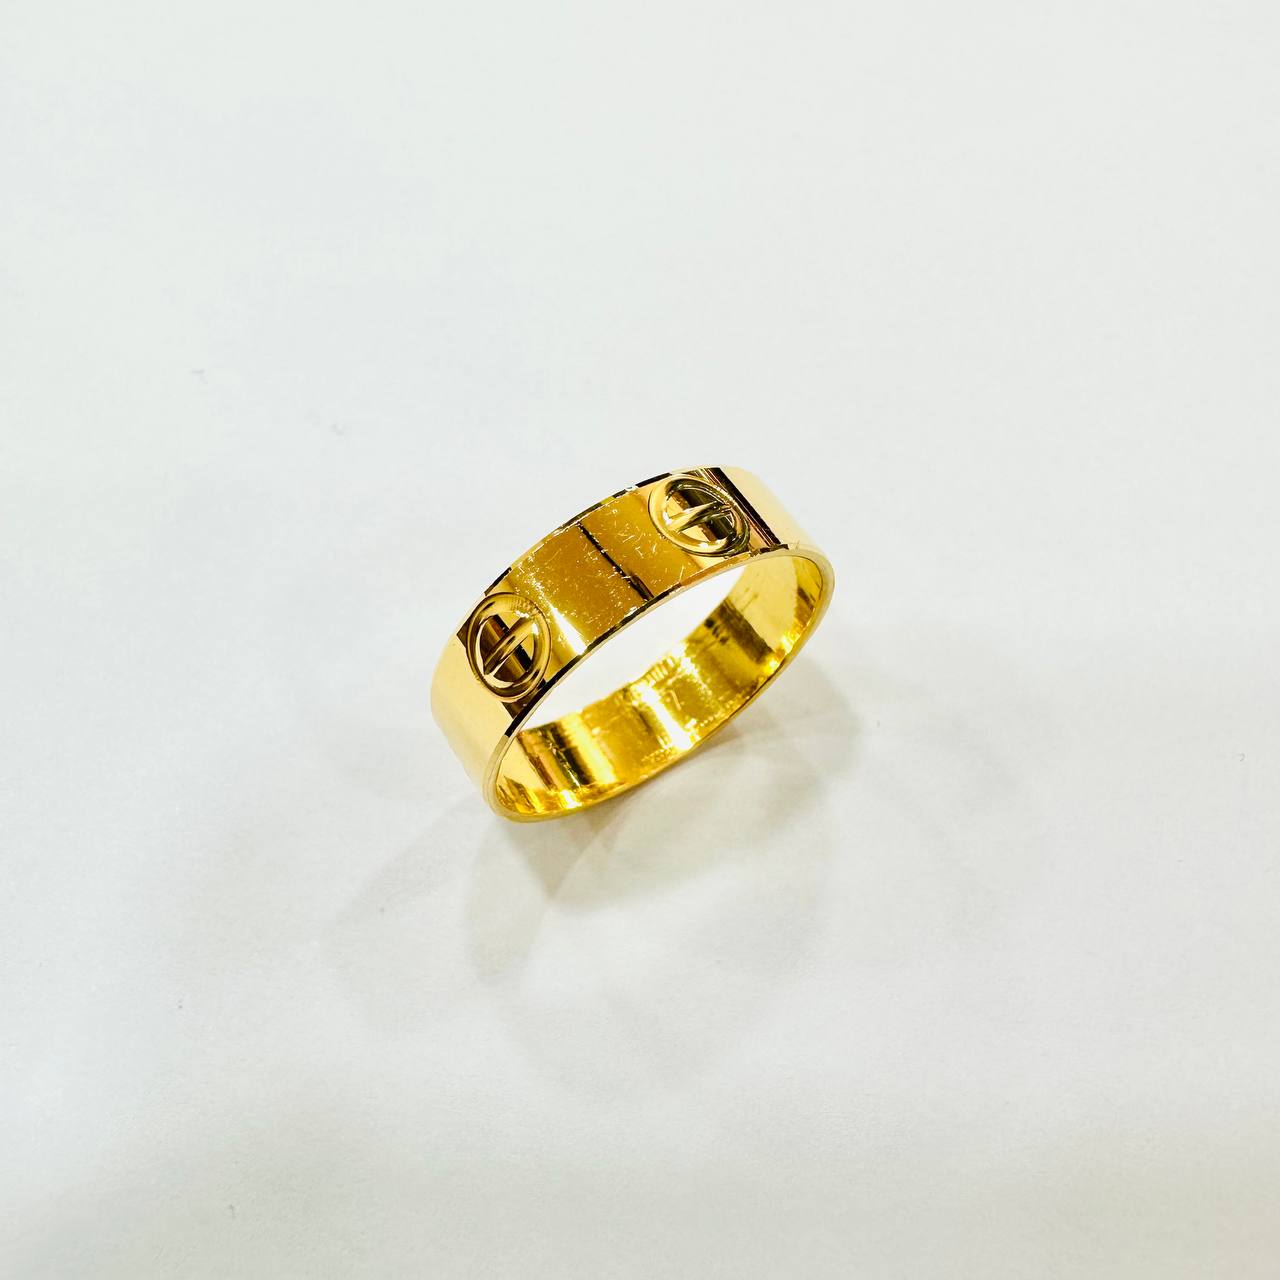 22k / 916 gold C Design Ring-916 gold-Best Gold Shop